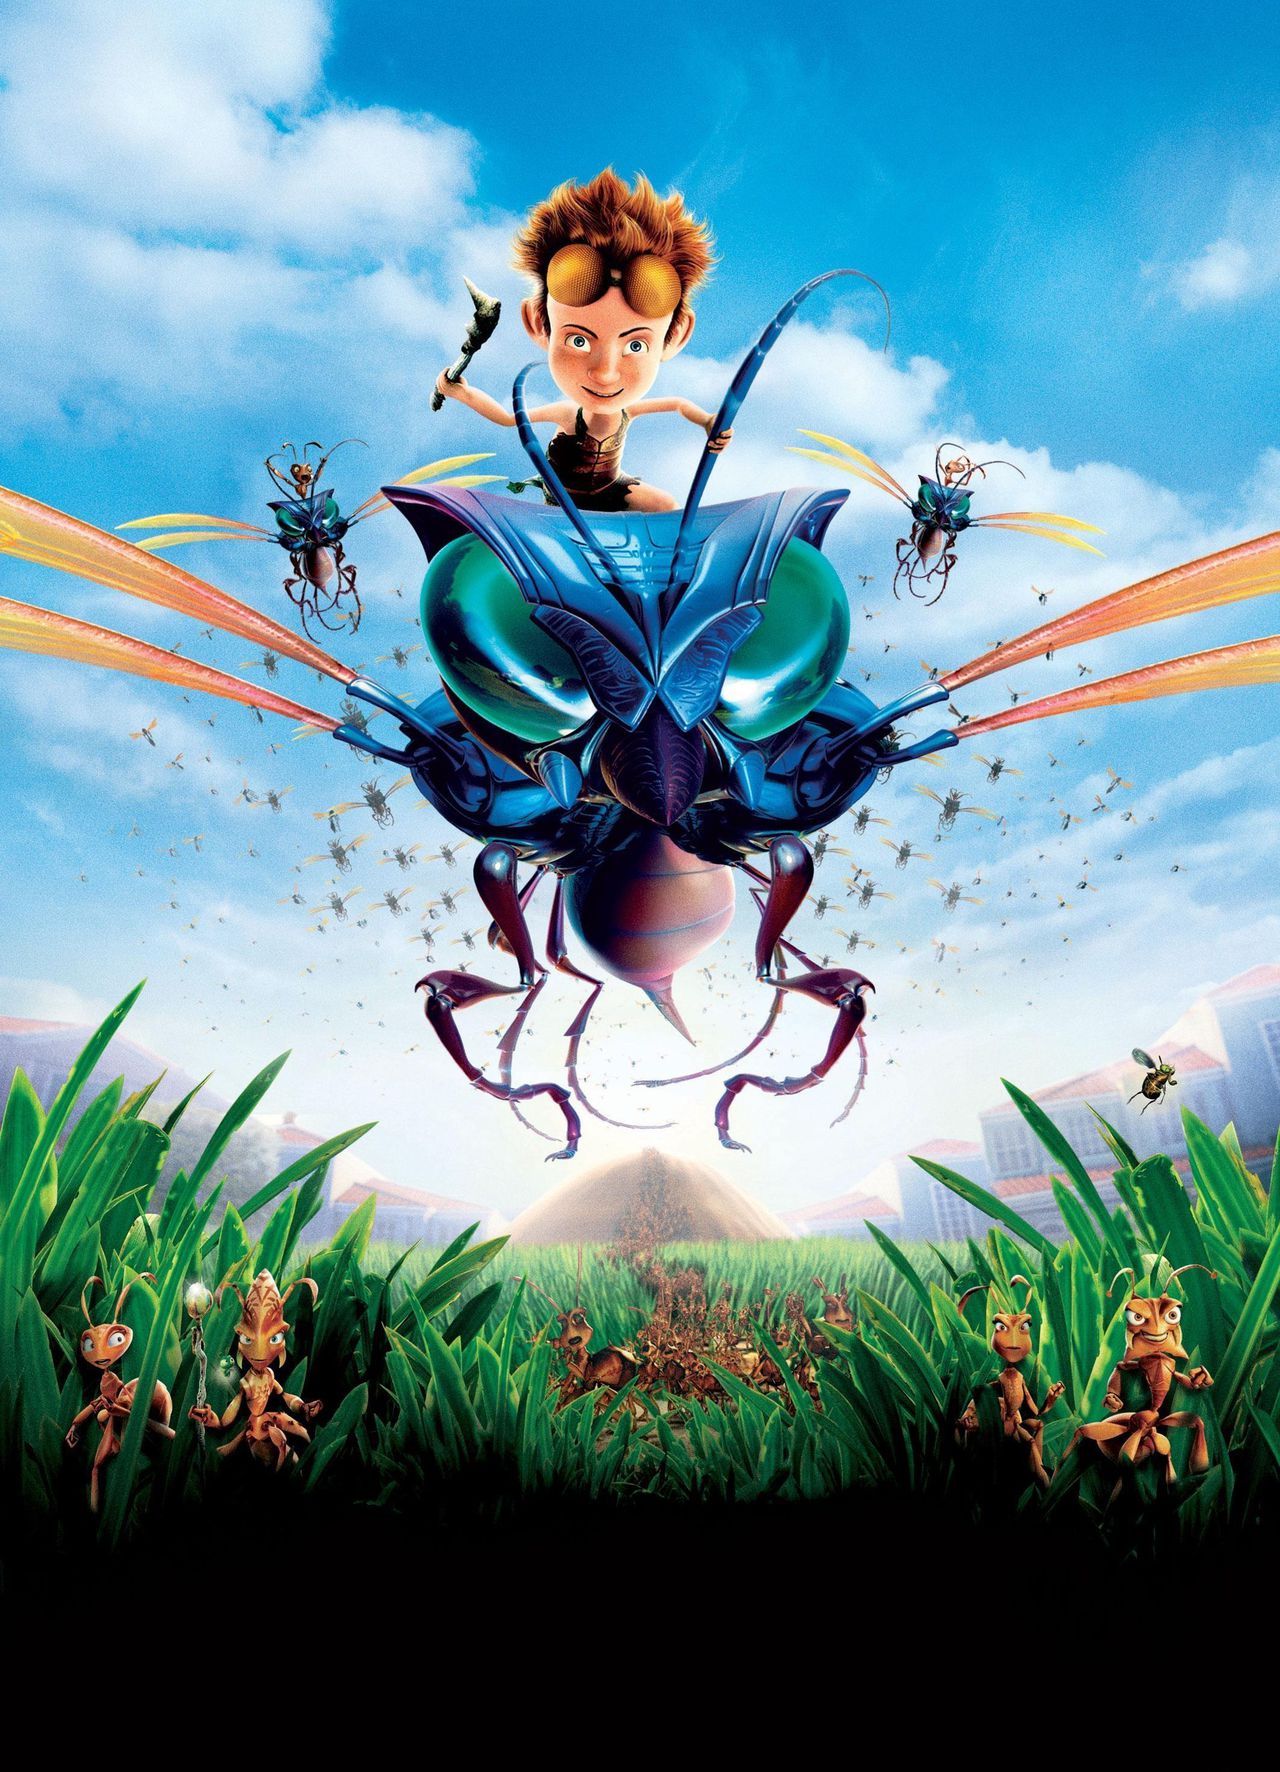 別惹螞蟻(2006年約翰A·戴維斯執導電影)